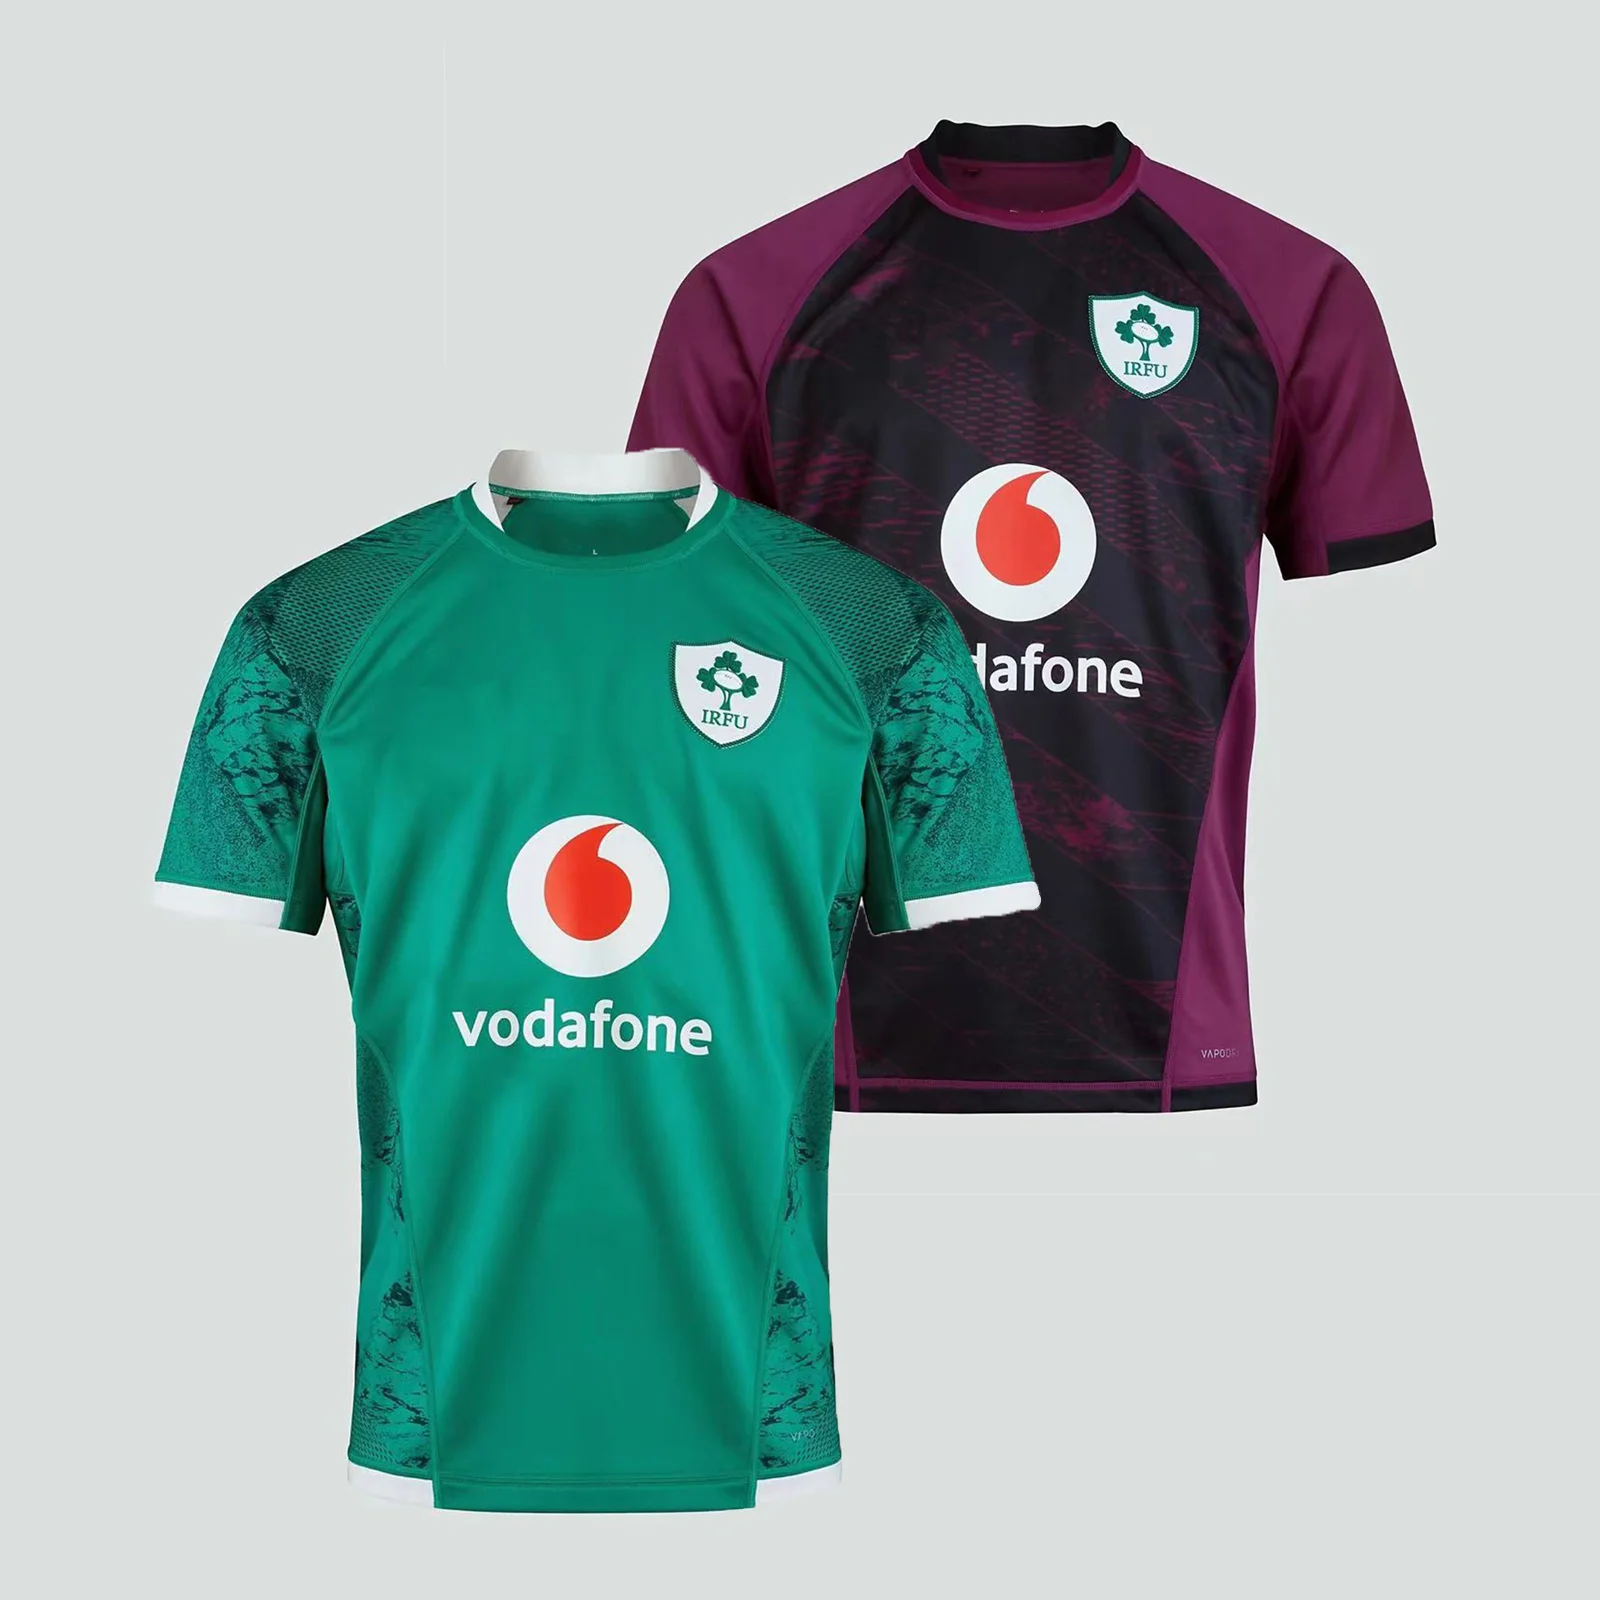 

Ireland IRFU 2021/22 Men's Home/Away Rugby Jerseys Sport Shirt S-5XL